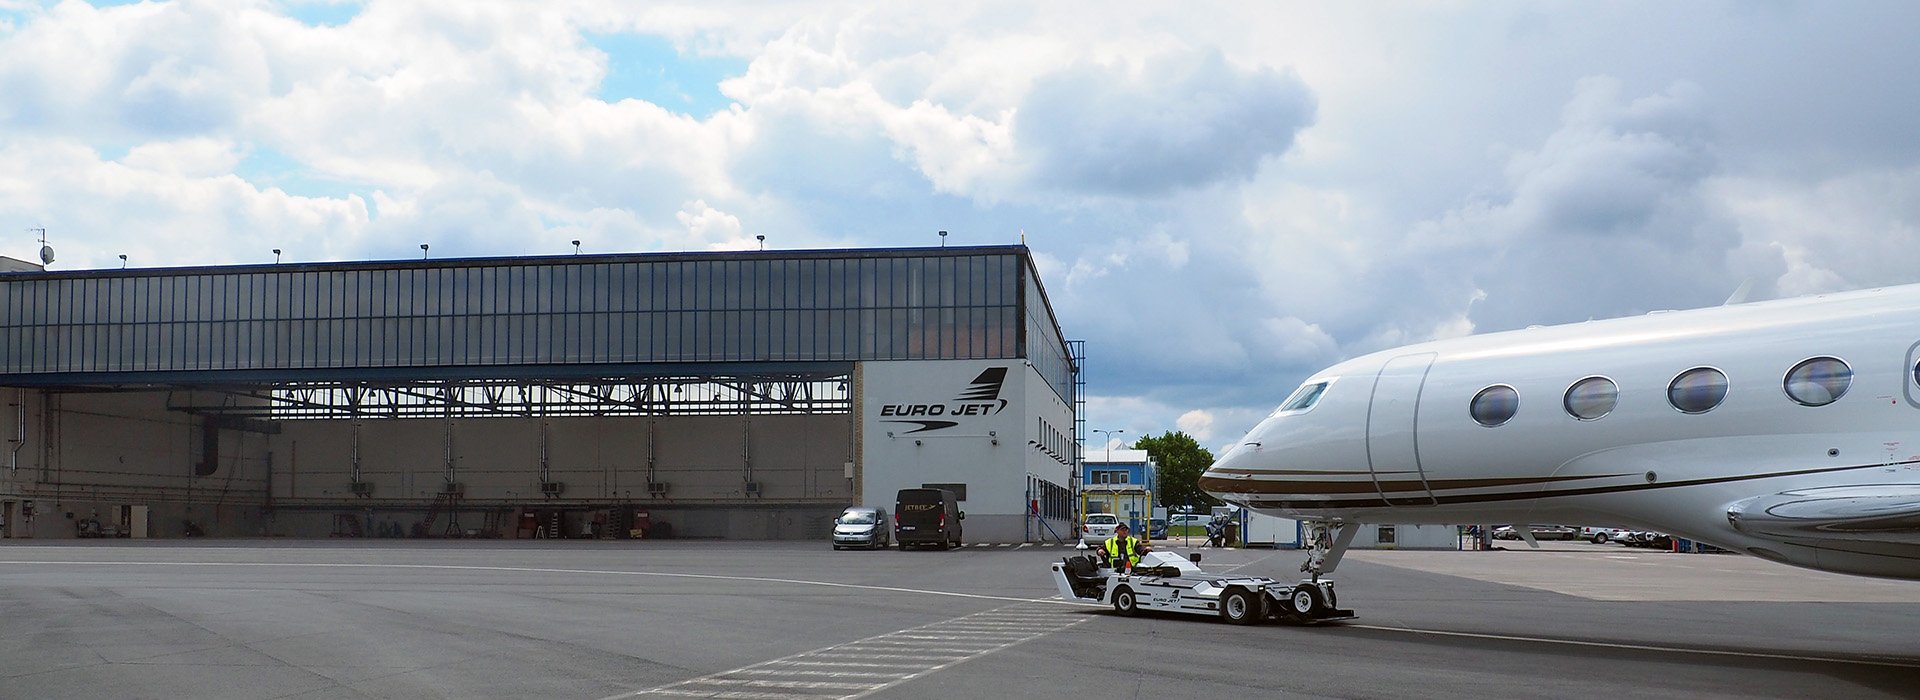 Prague Hangar | Flight Support Services, Ground Handling Support, Jet Fuel